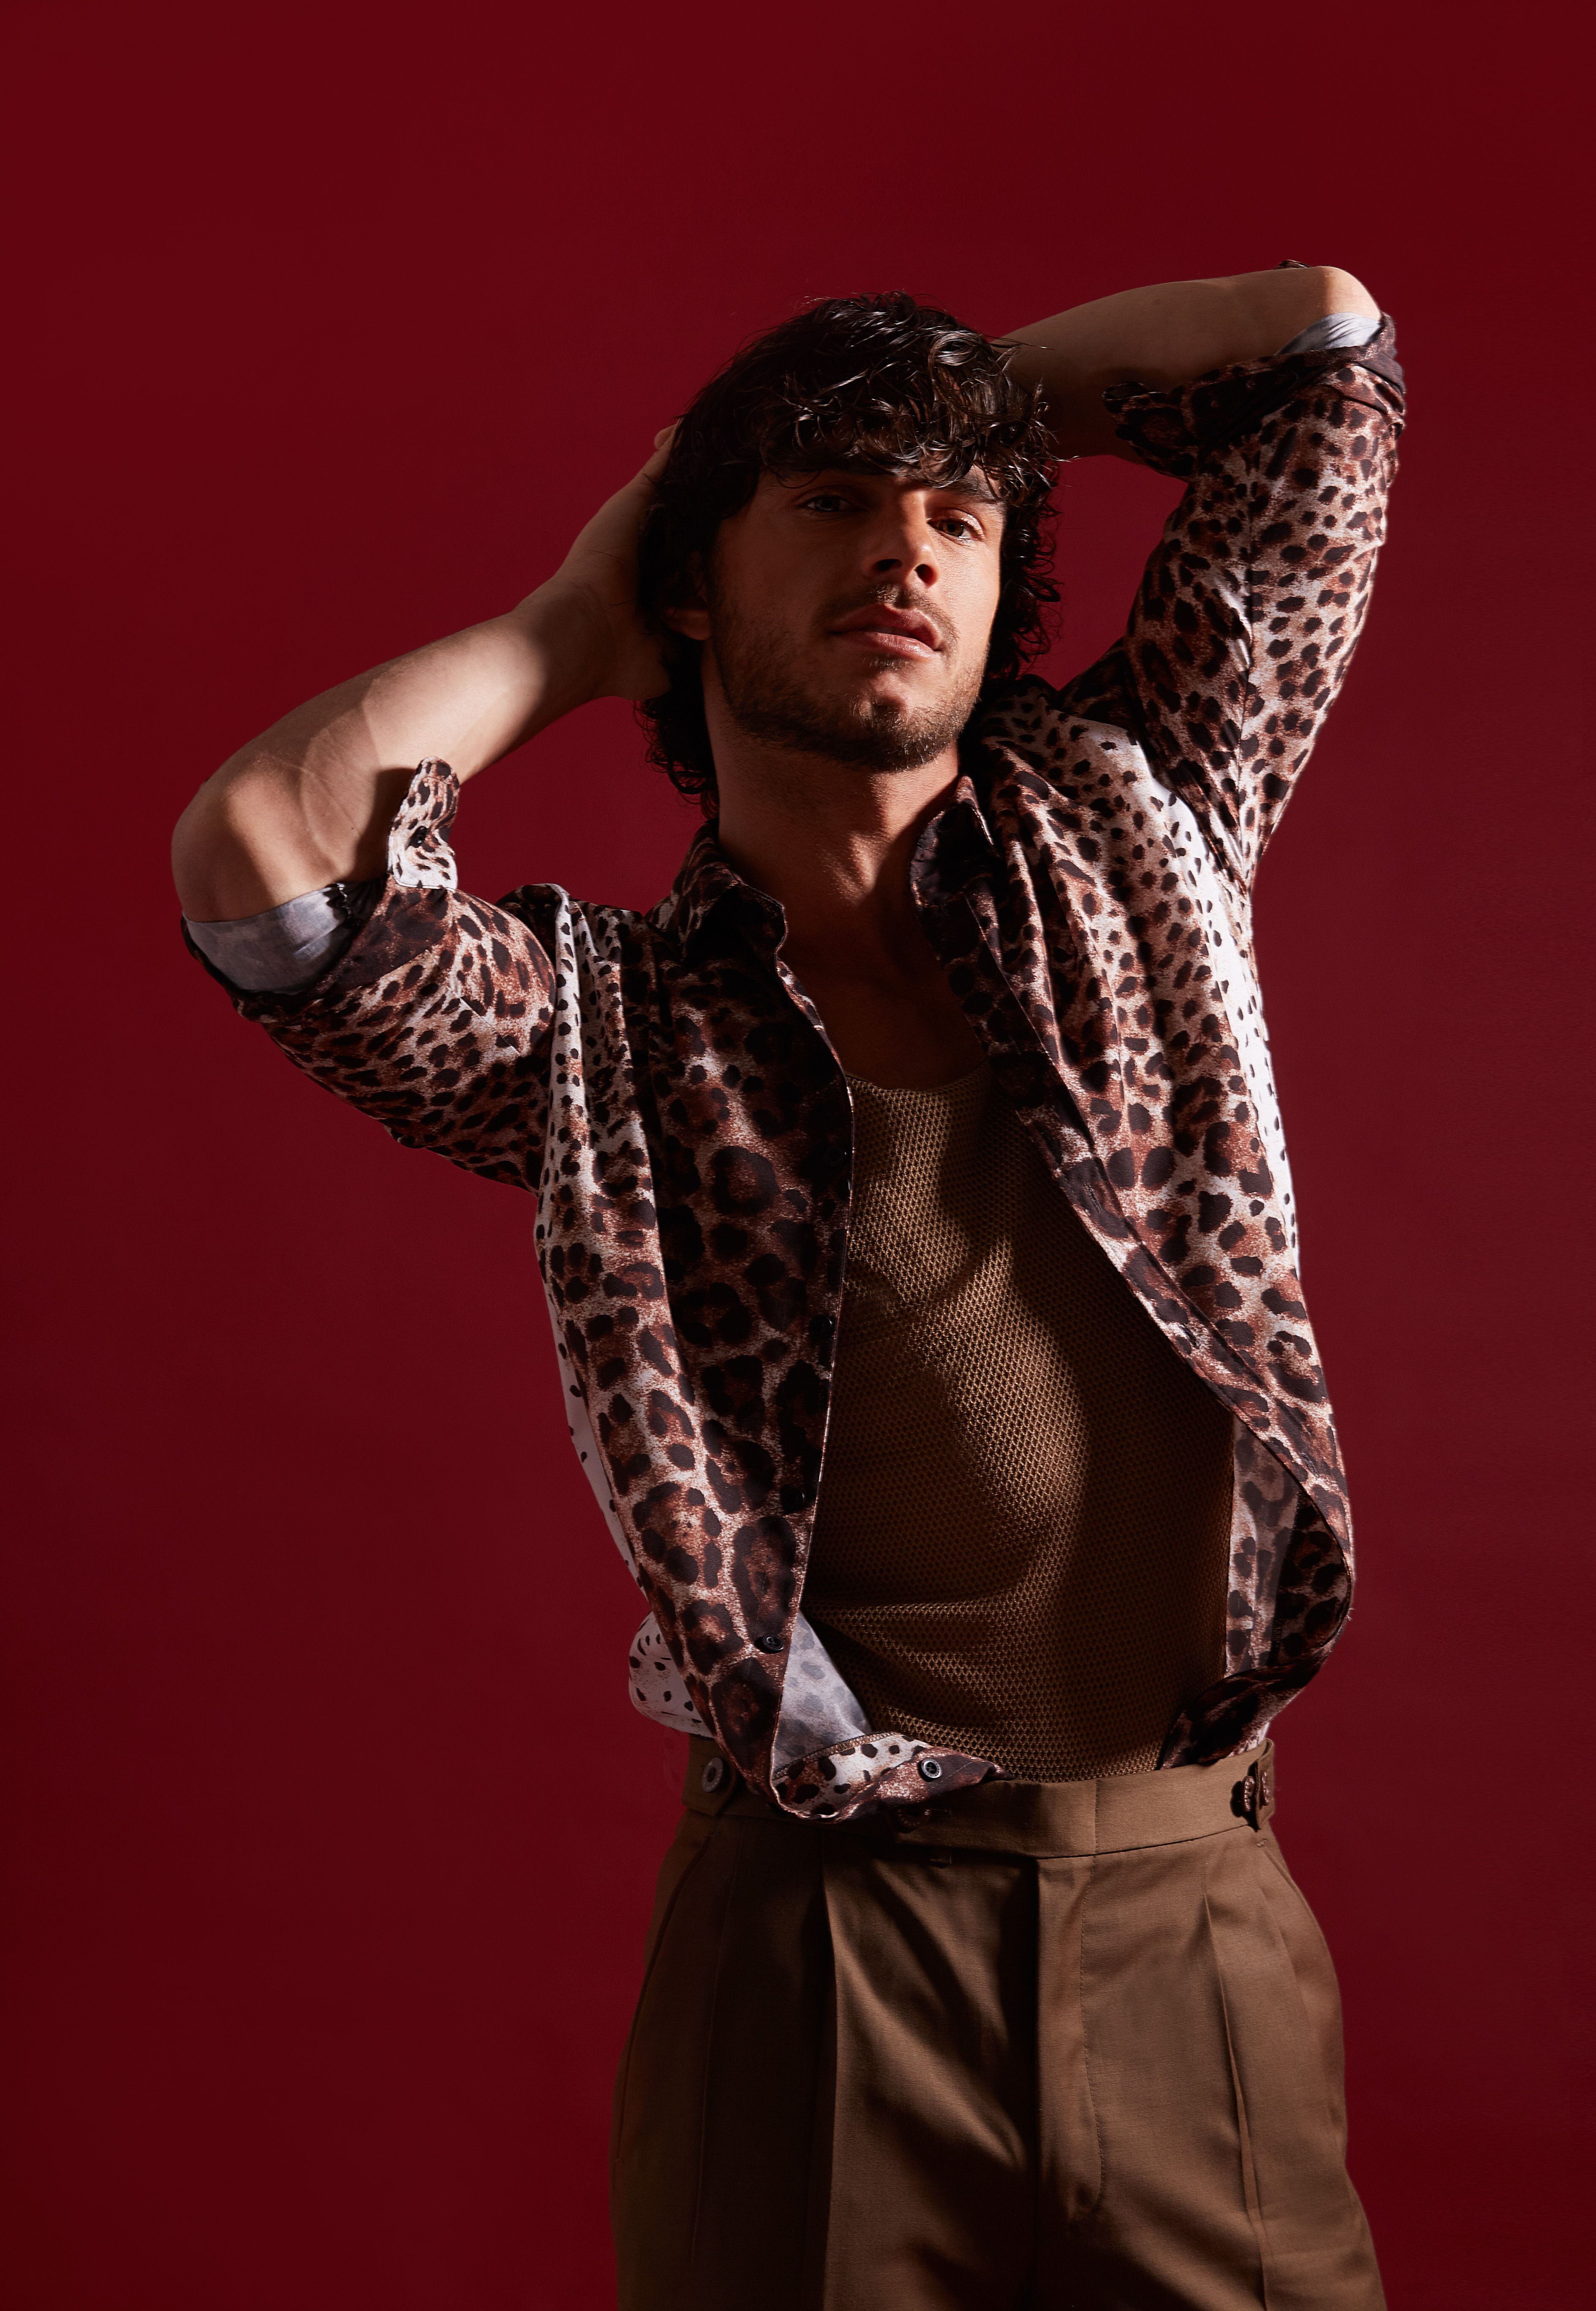 Maximiliano posa con una camisa animal print, top y pantalón recto. (Foto: Víctor Idrogo)